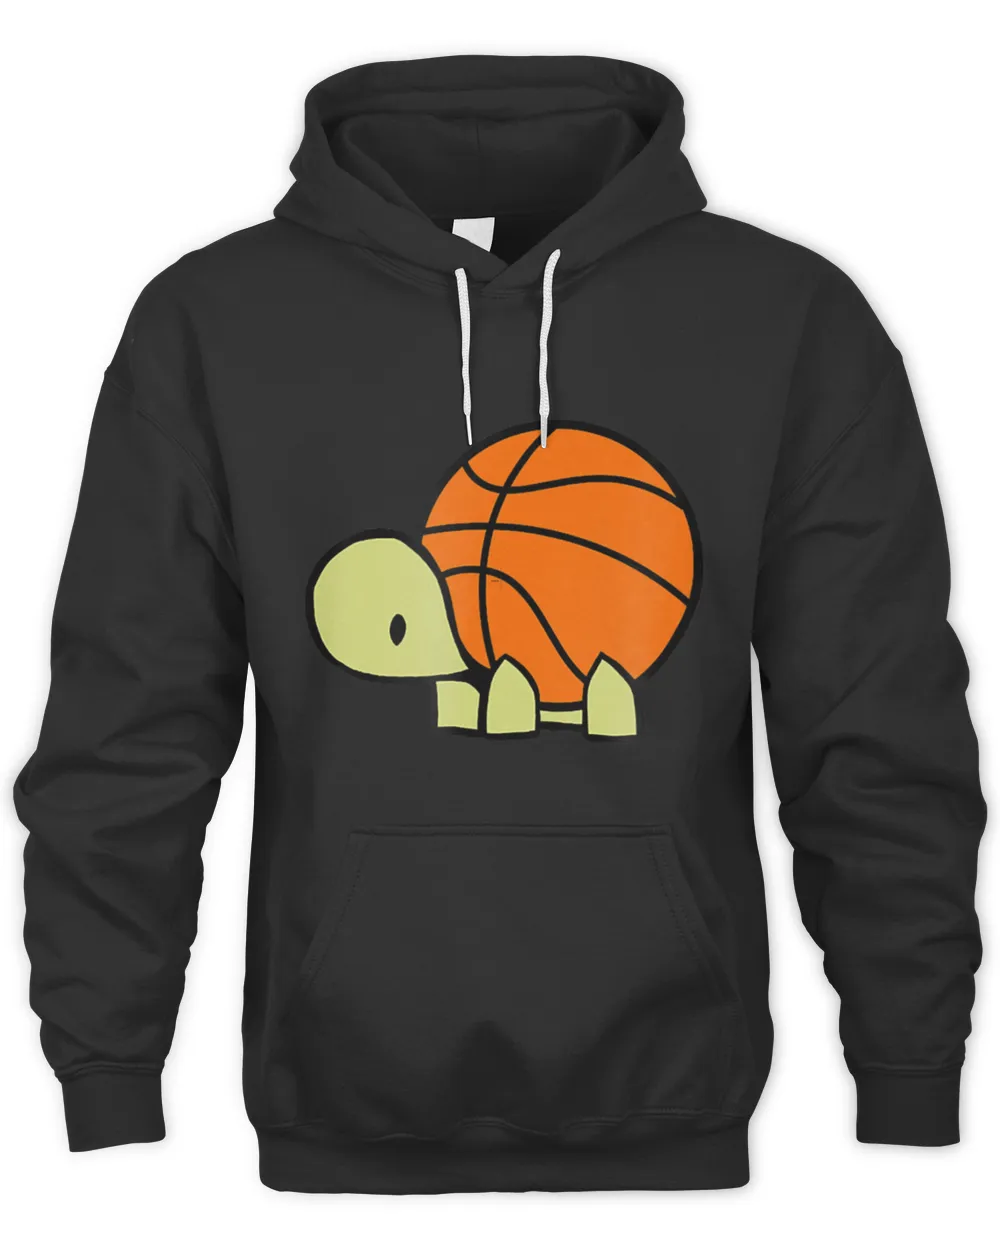 max turtle loves basketball  i baller turtles team